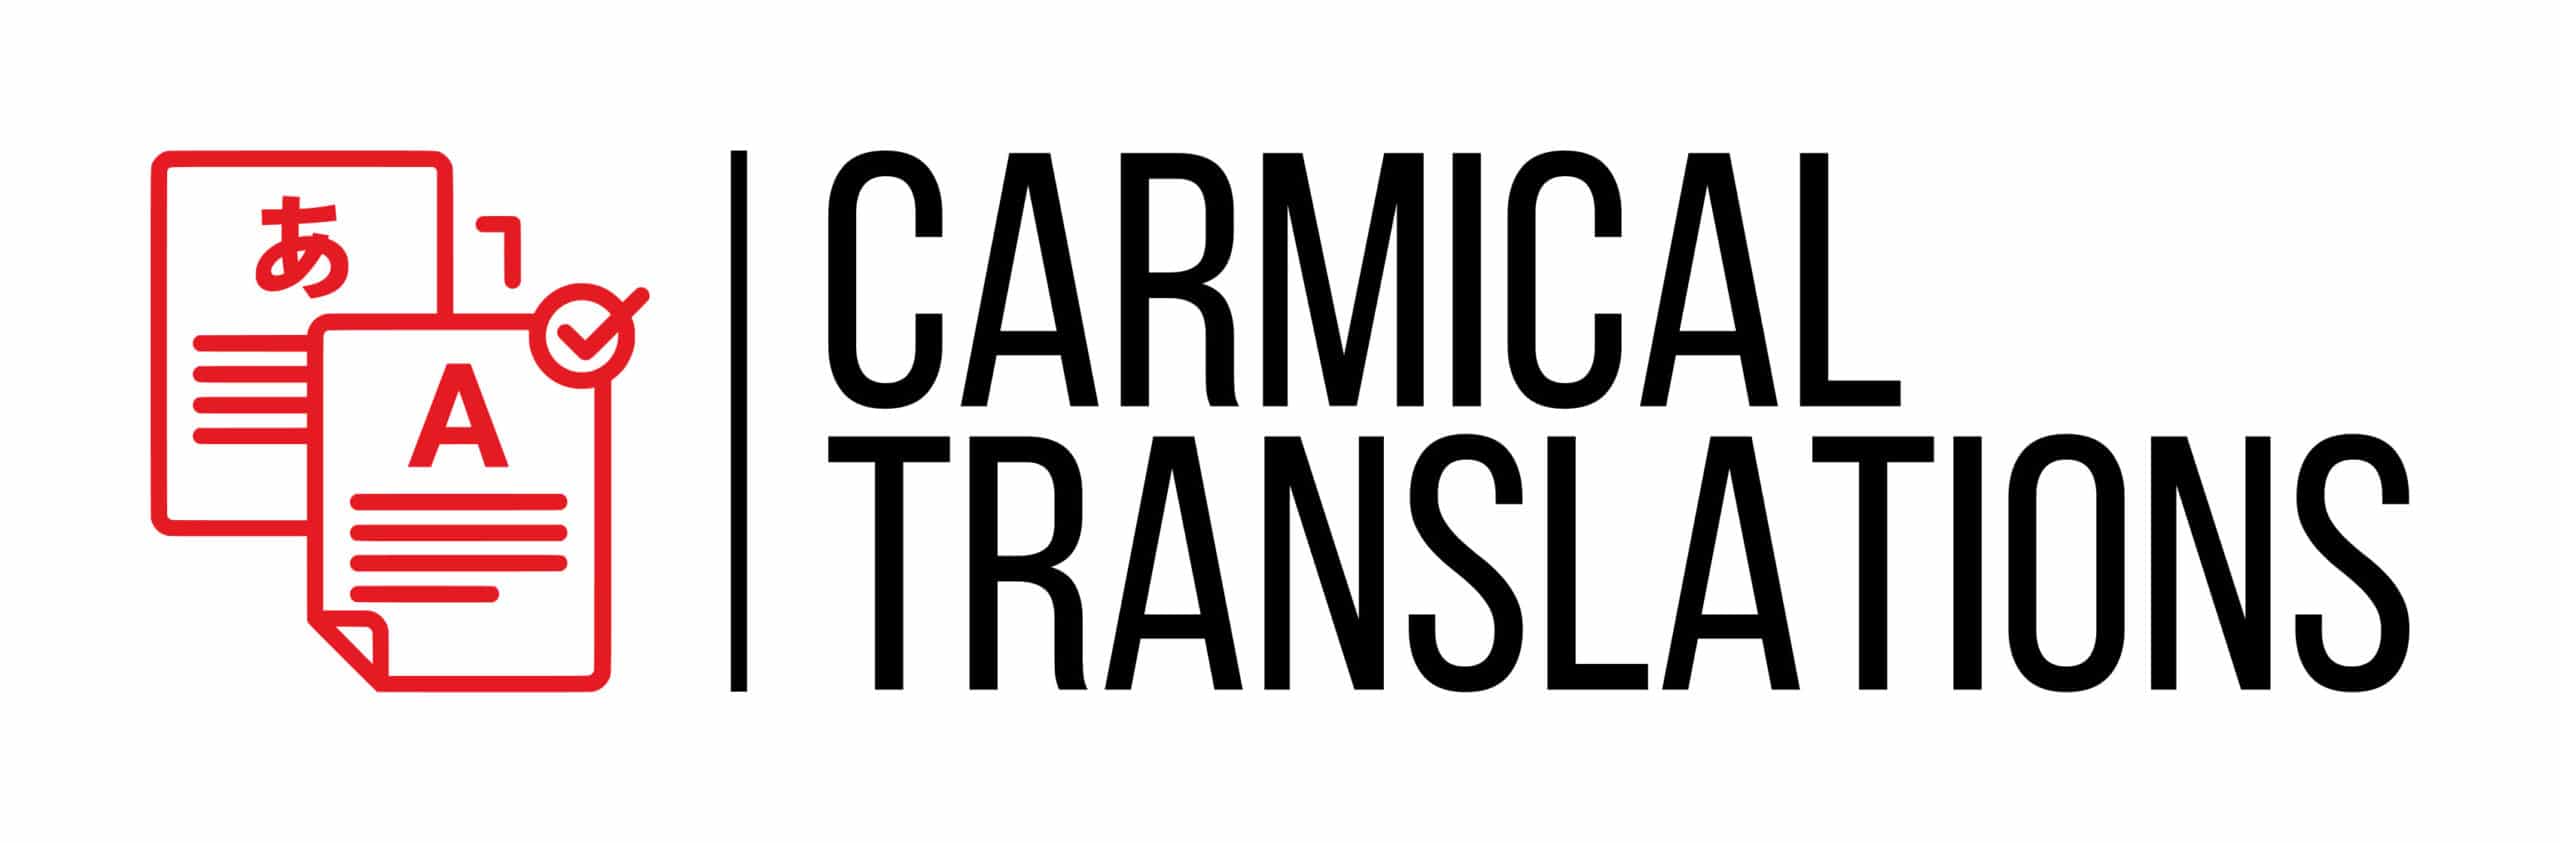 Carmical Translations